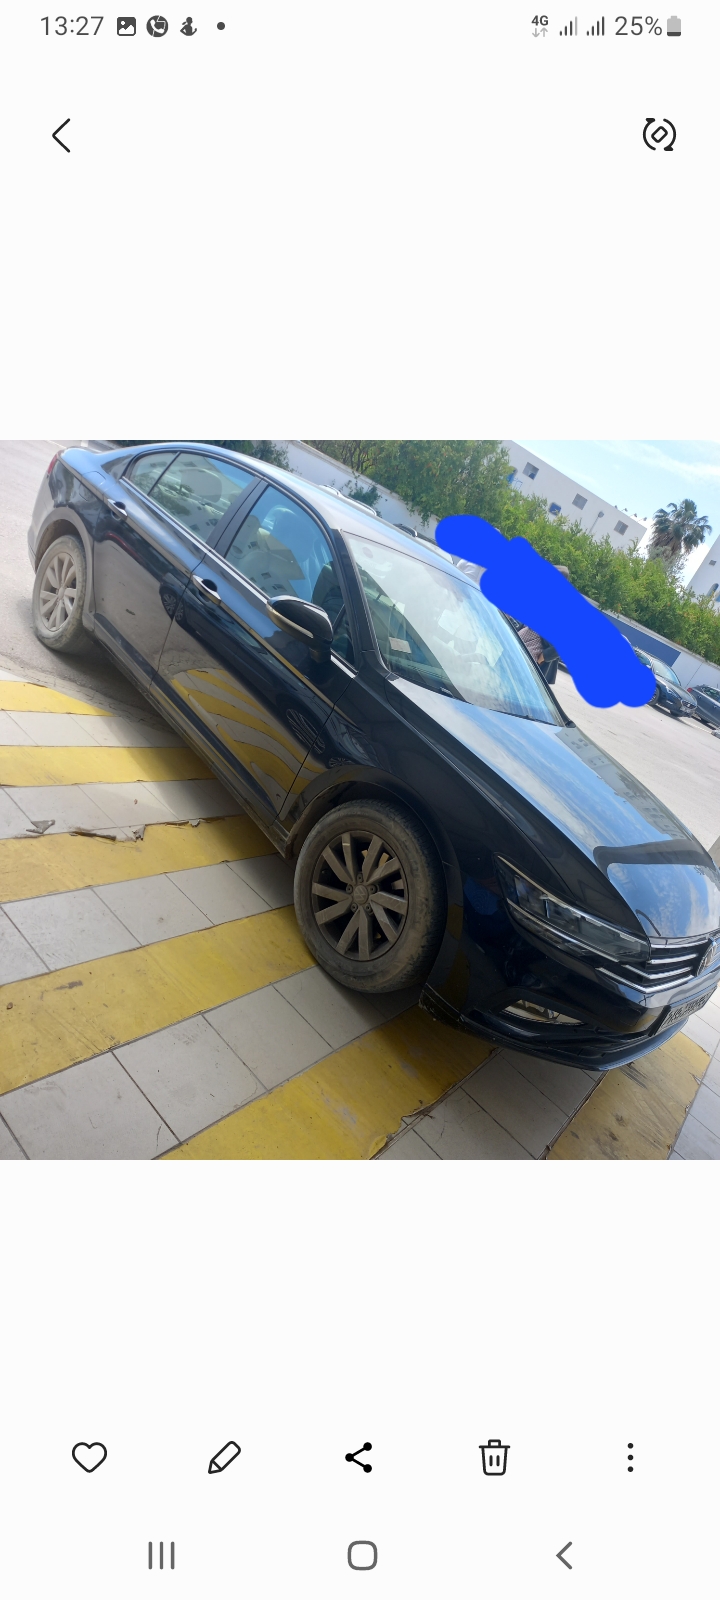 Volkswagen Passat - Tunisie